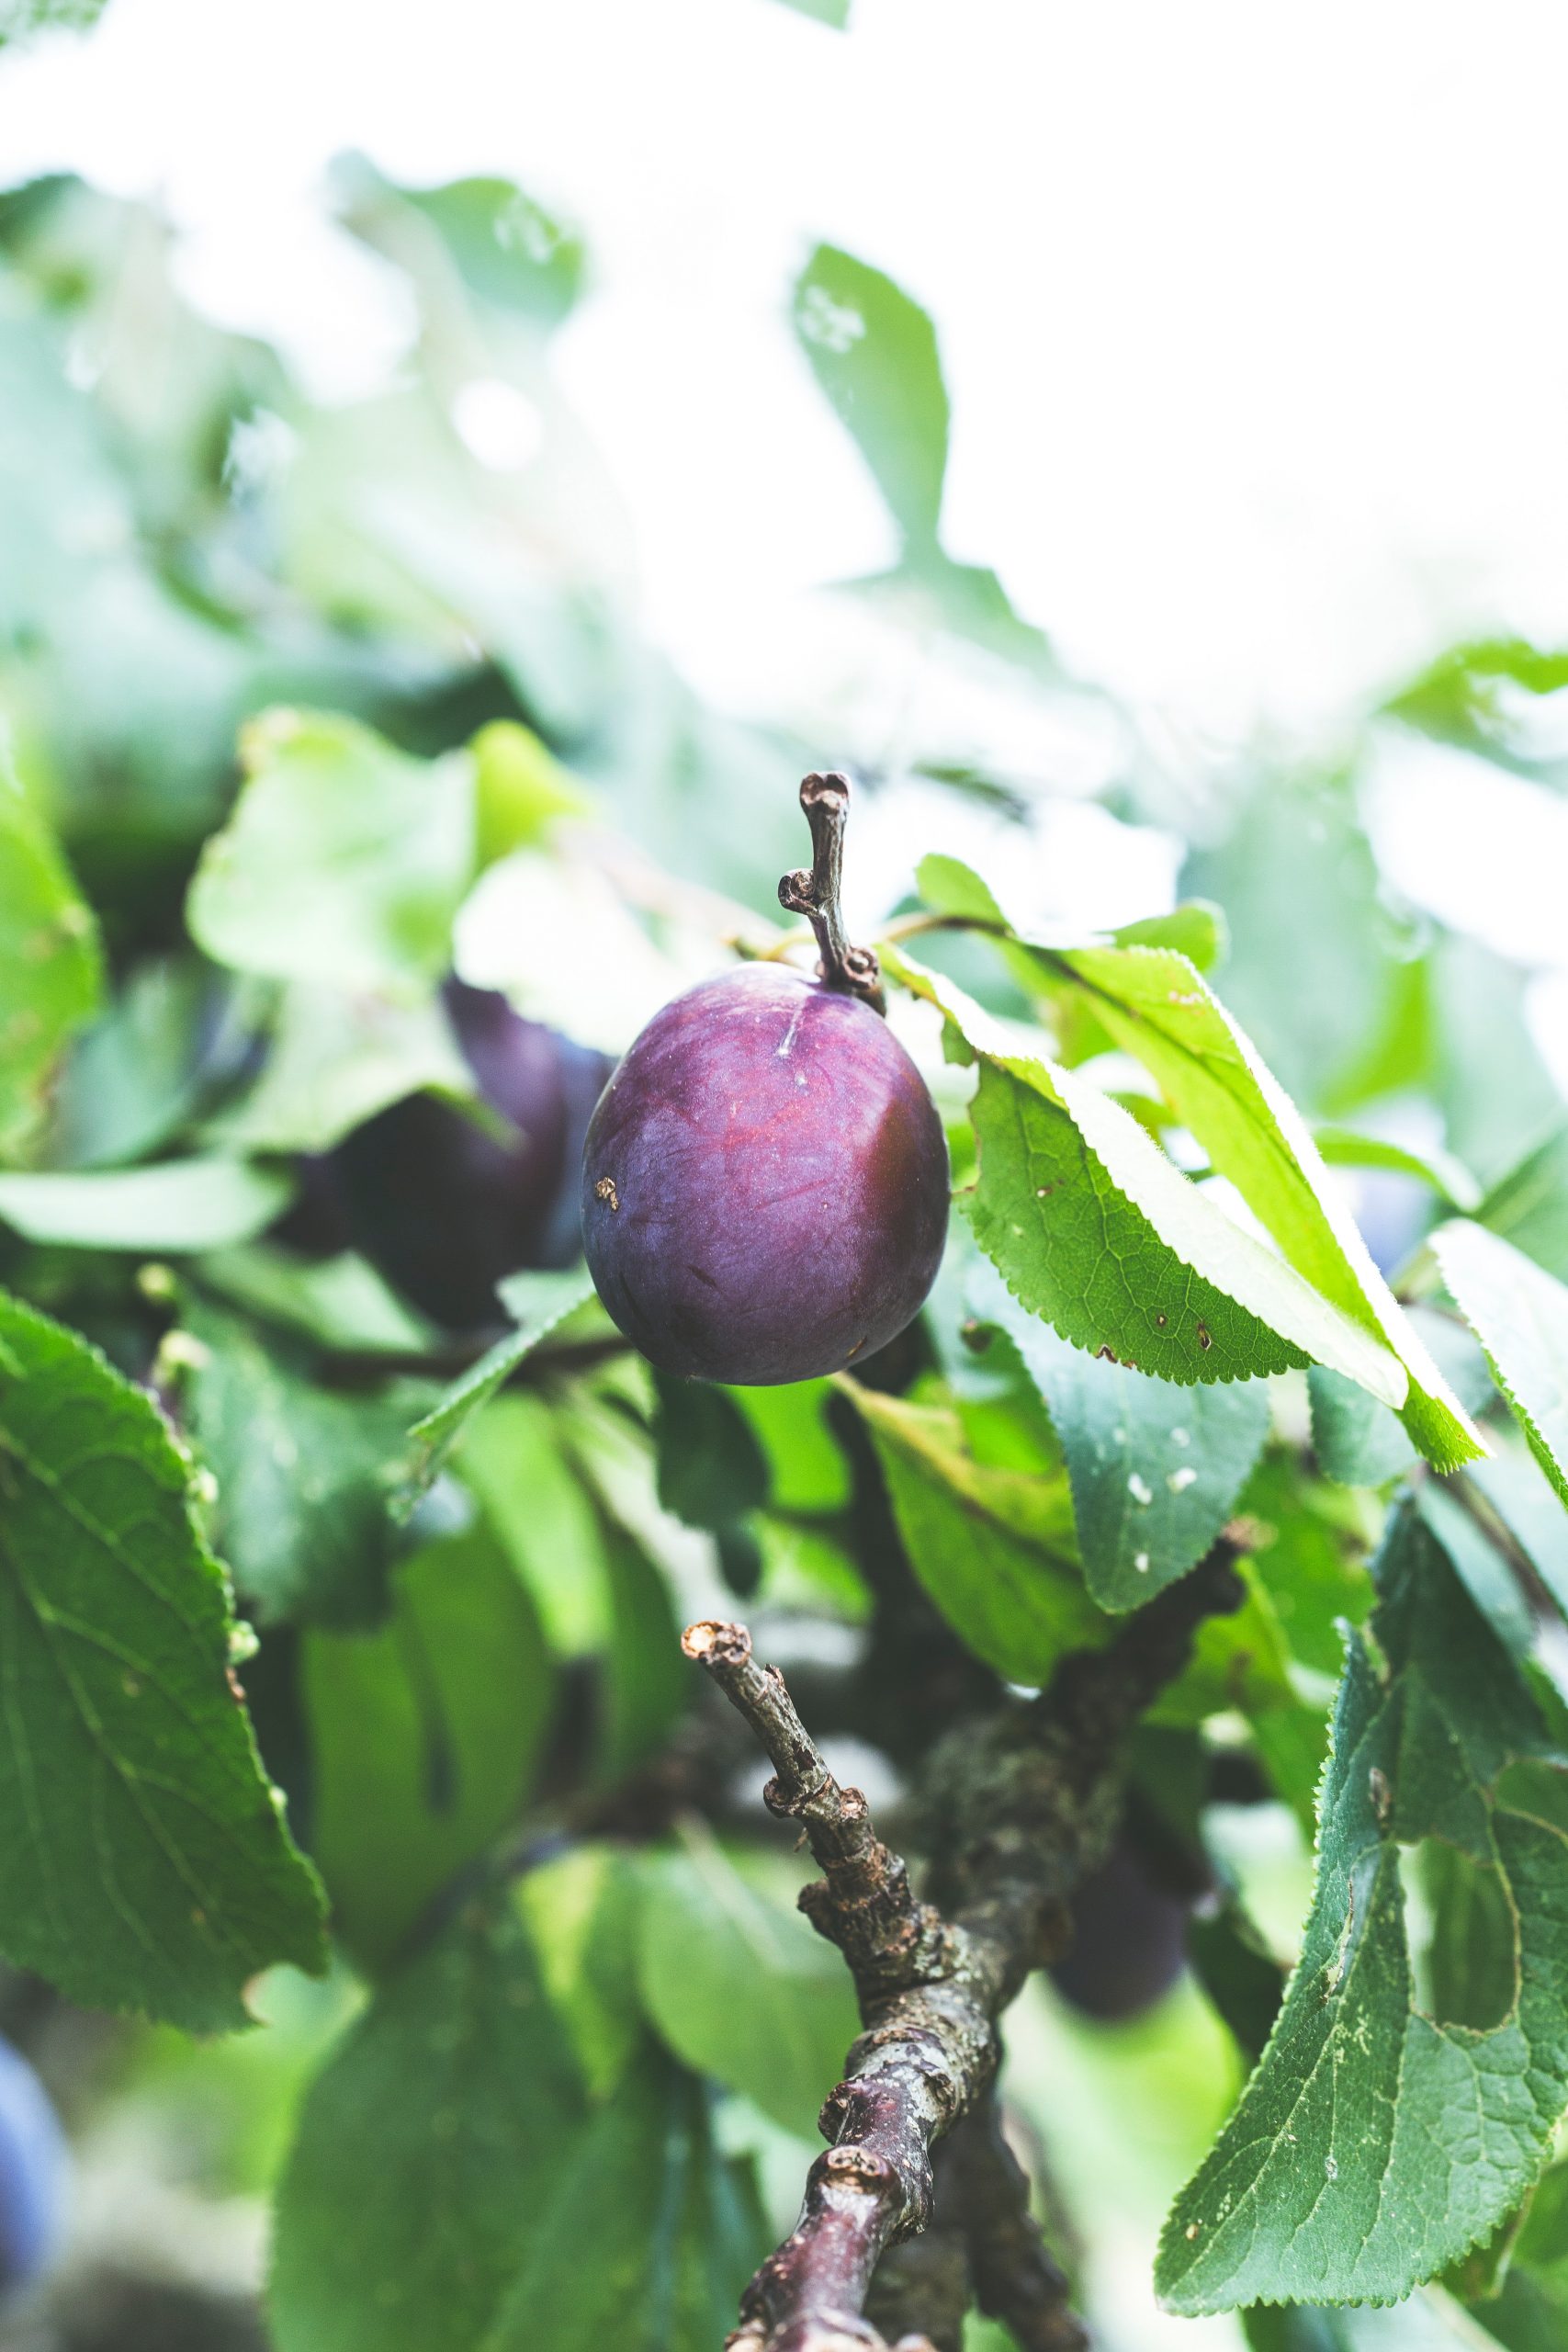 Les pruniers produisent-ils des fruits chaque année